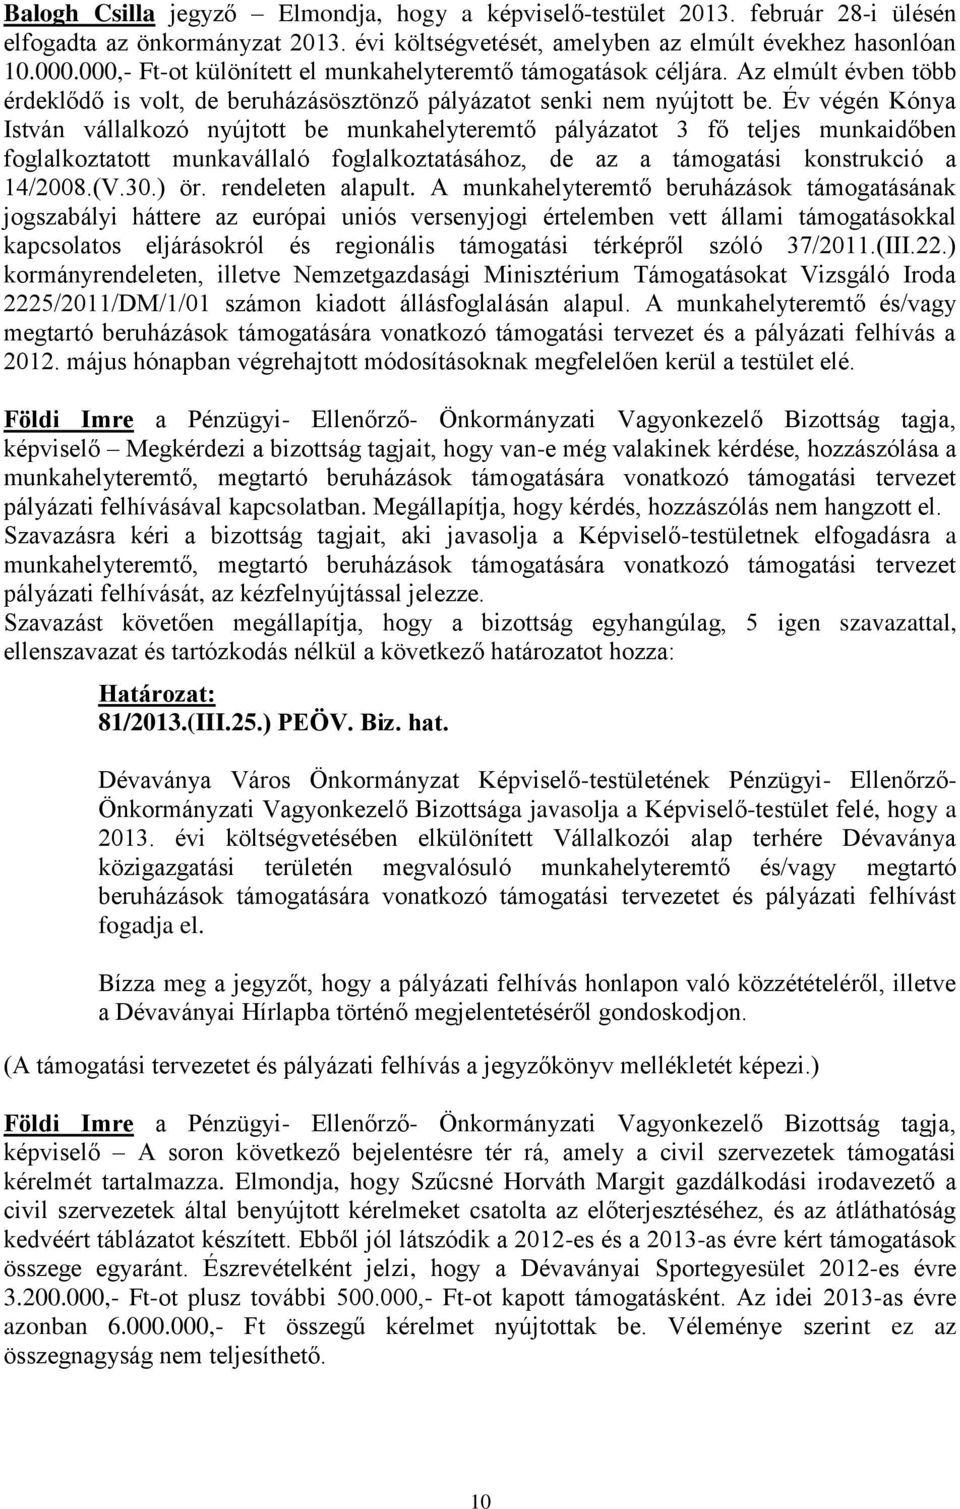 Év végén Kónya István vállalkozó nyújtott be munkahelyteremtő pályázatot 3 fő teljes munkaidőben foglalkoztatott munkavállaló foglalkoztatásához, de az a támogatási konstrukció a 14/2008.(V.30.) ör.